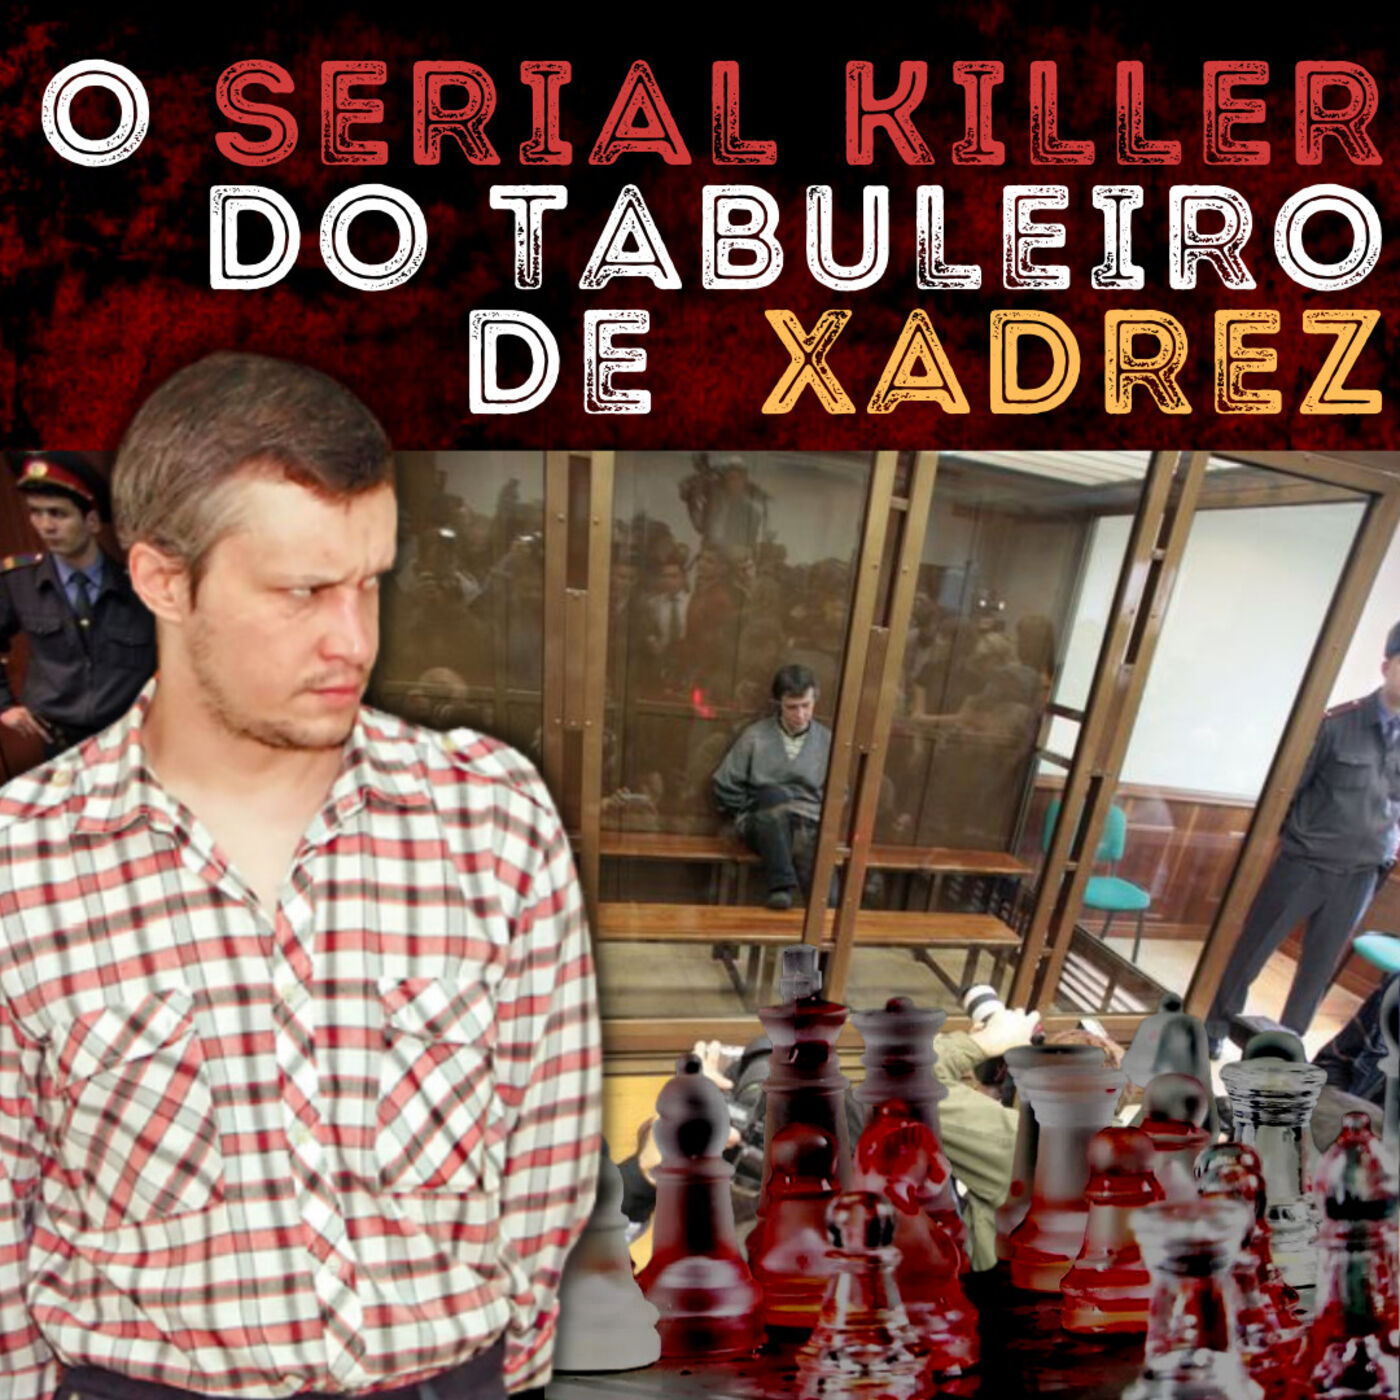 O Serial Killer do Tabuleiro de Xadrez